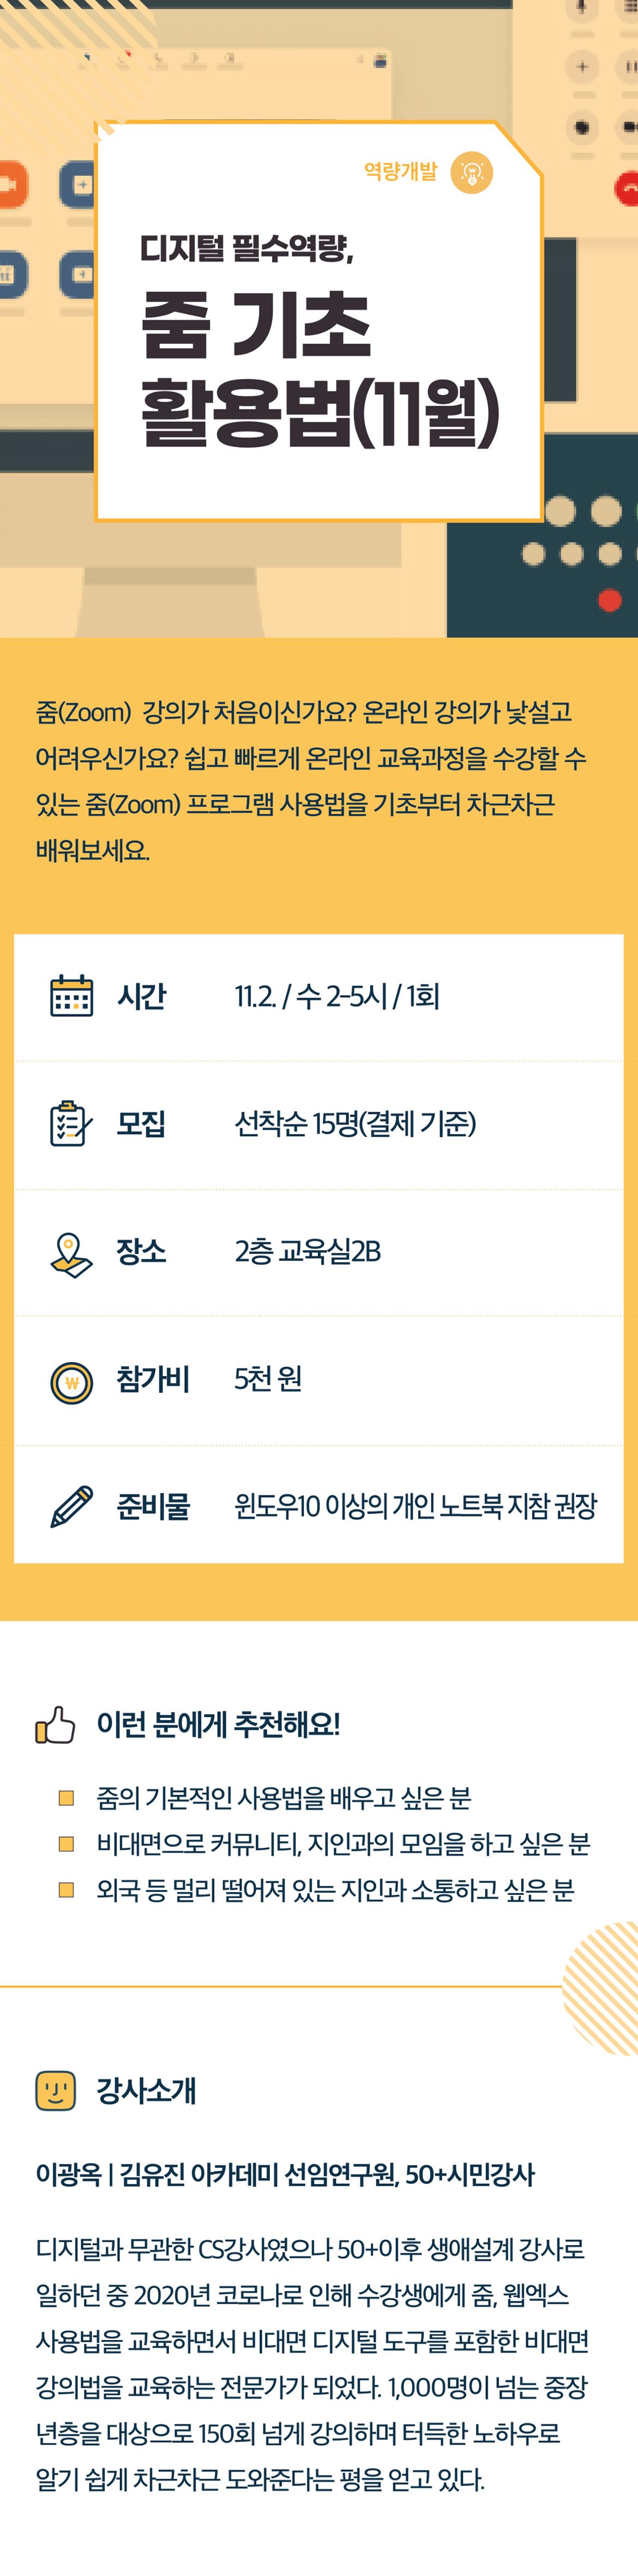 2022서부캠하반기_역량개발11_줌기초(11월)(0719수정).jpg